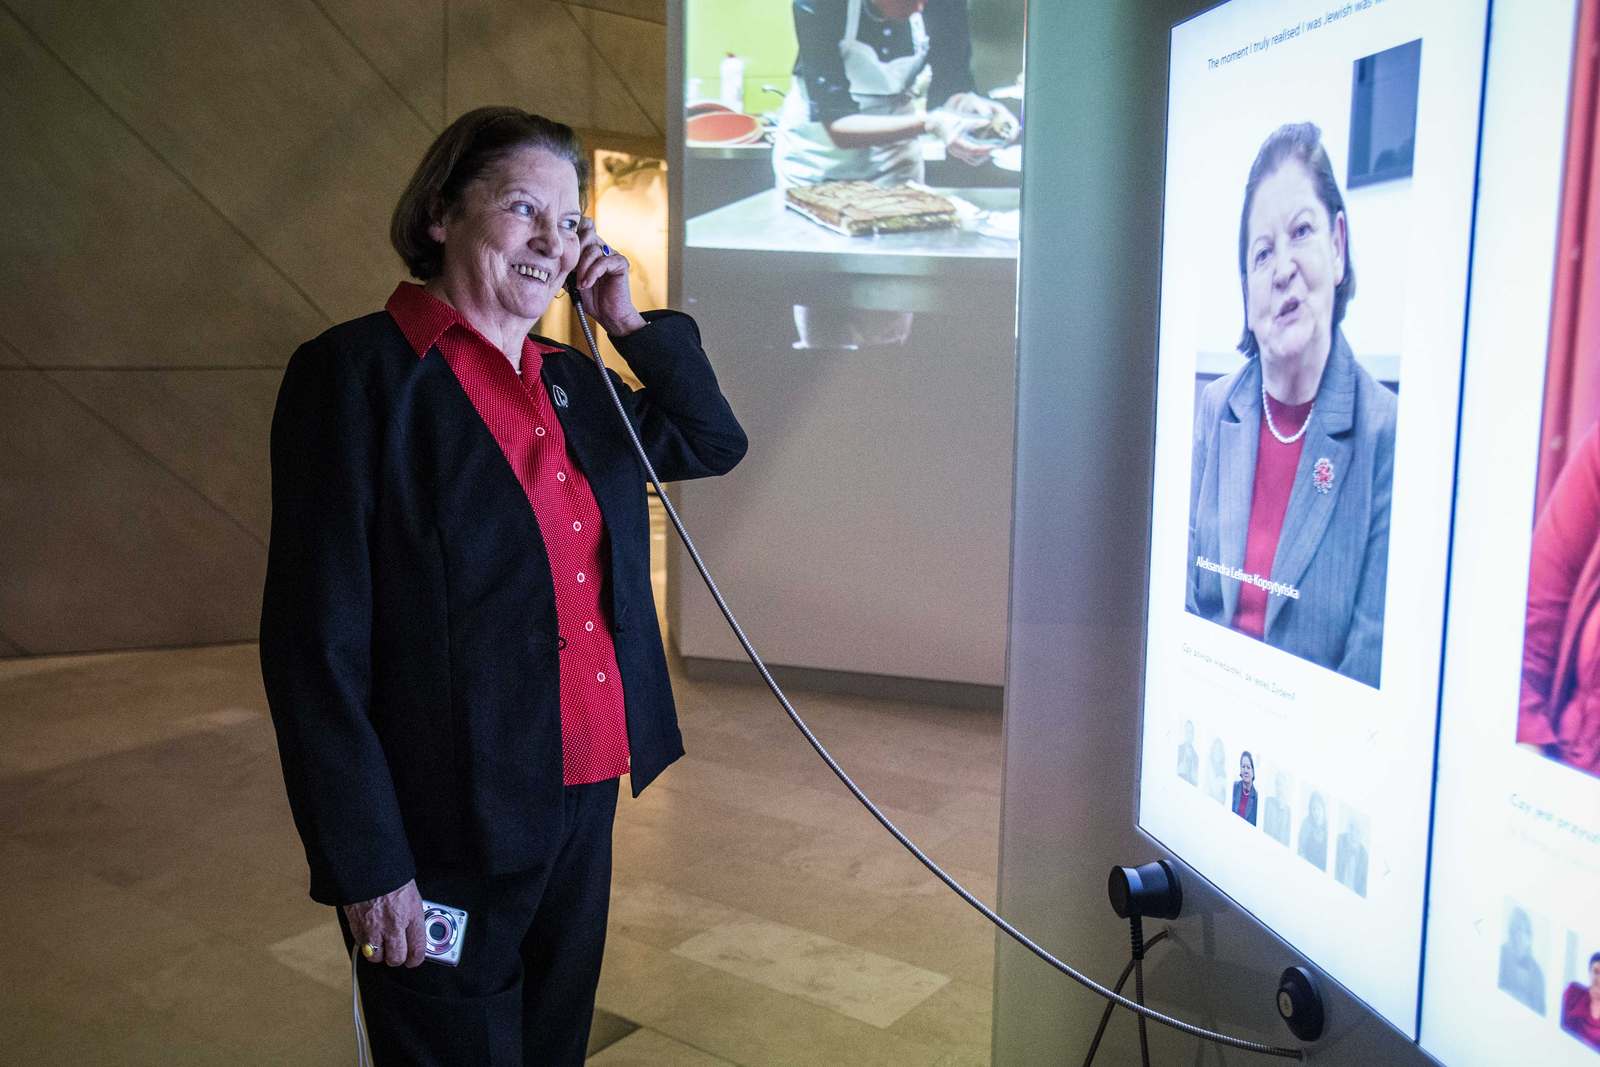 Muzeum POLIN - kobieta słucha nagrania przez słuchawkę. Na ekranie wyświetla się jej podobizna.